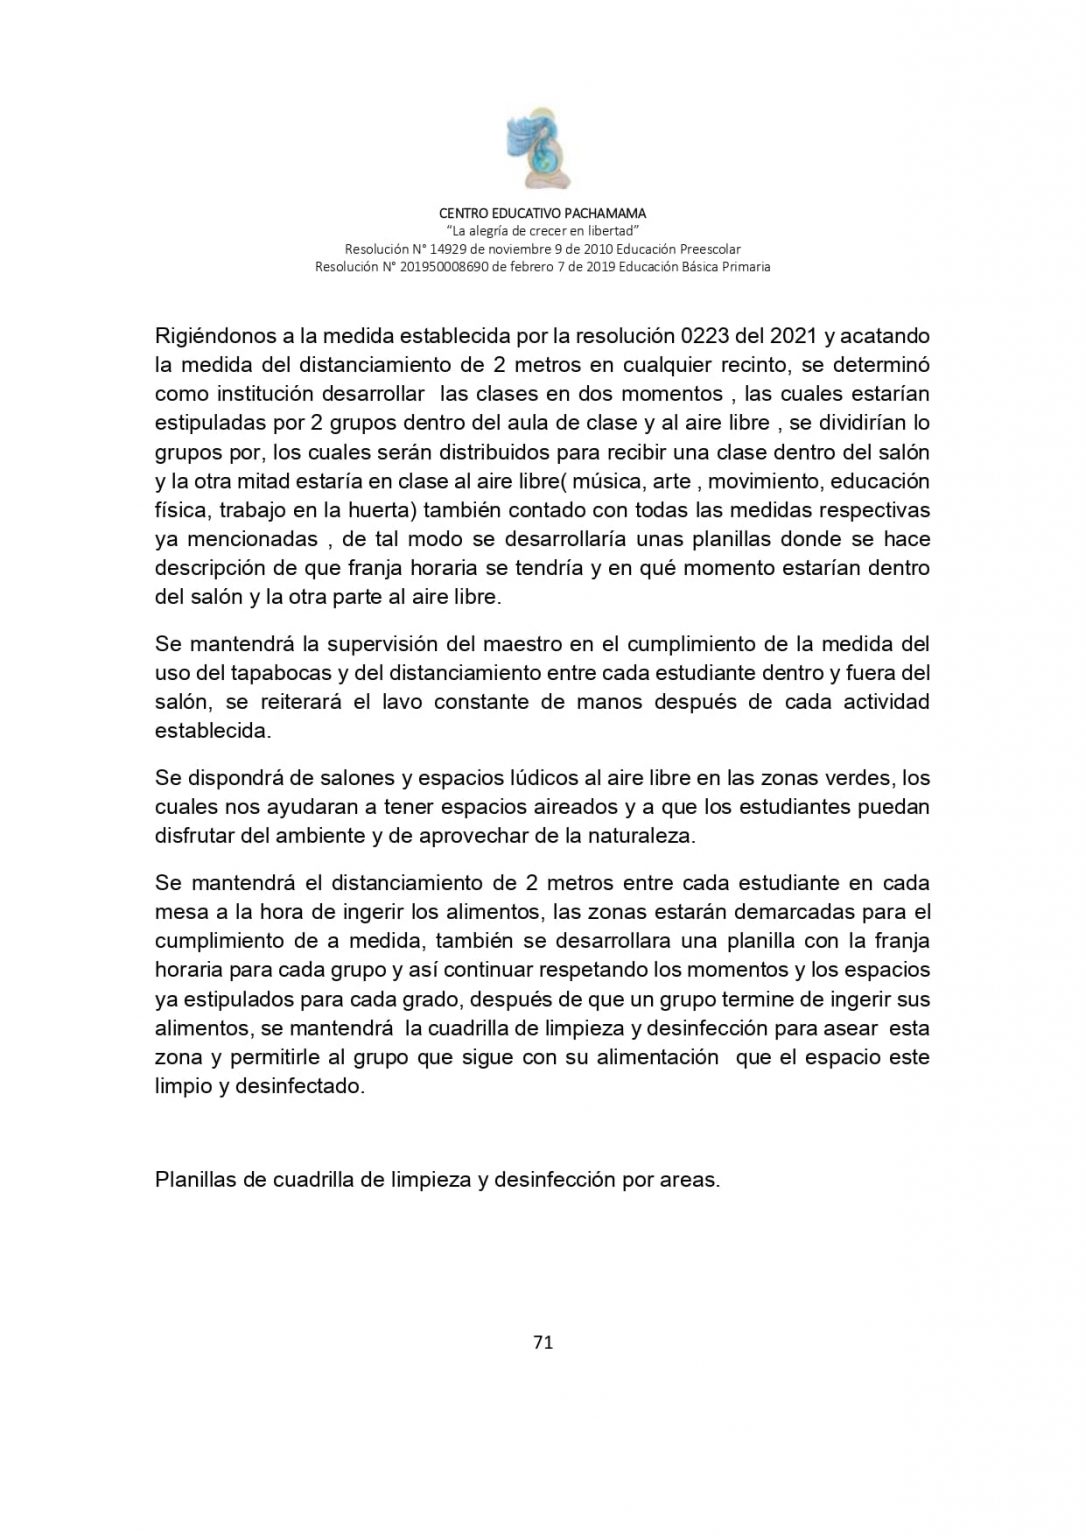 PROTOCOLO DE BIOSEGURIDAD PACHAMAMA Última Versión (3)-convertido_page-0071